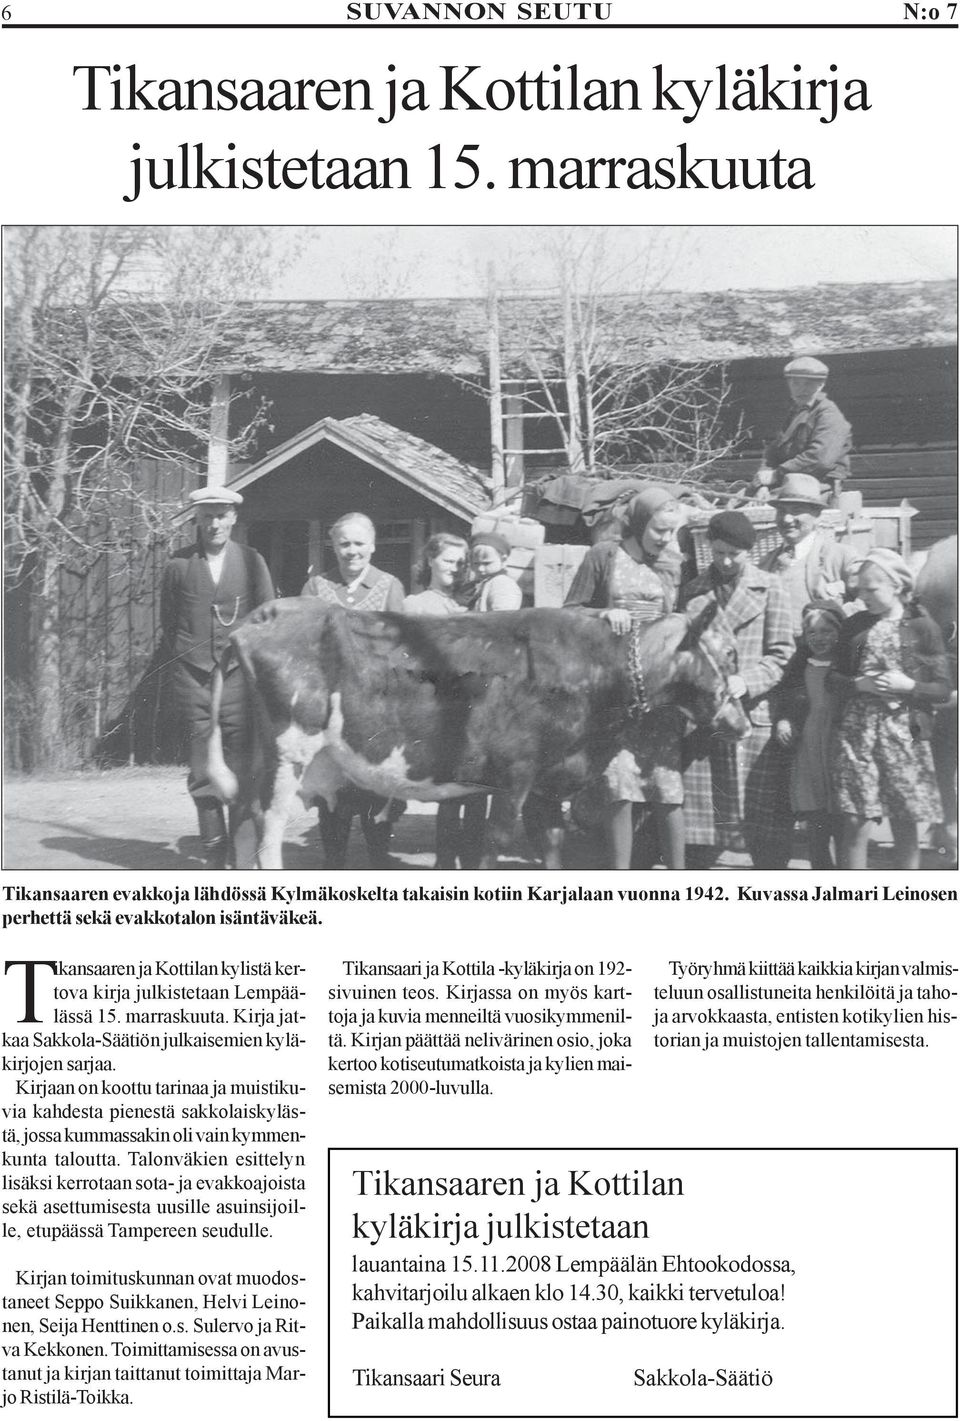 Kirja jatkaa Sakkola-Säätiön julkaisemien kyläkirjojen sarjaa. Kirjaan on koottu tarinaa ja muistikuvia kahdesta pienestä sakkolaiskylästä, jossa kummassakin oli vain kymmenkunta taloutta.